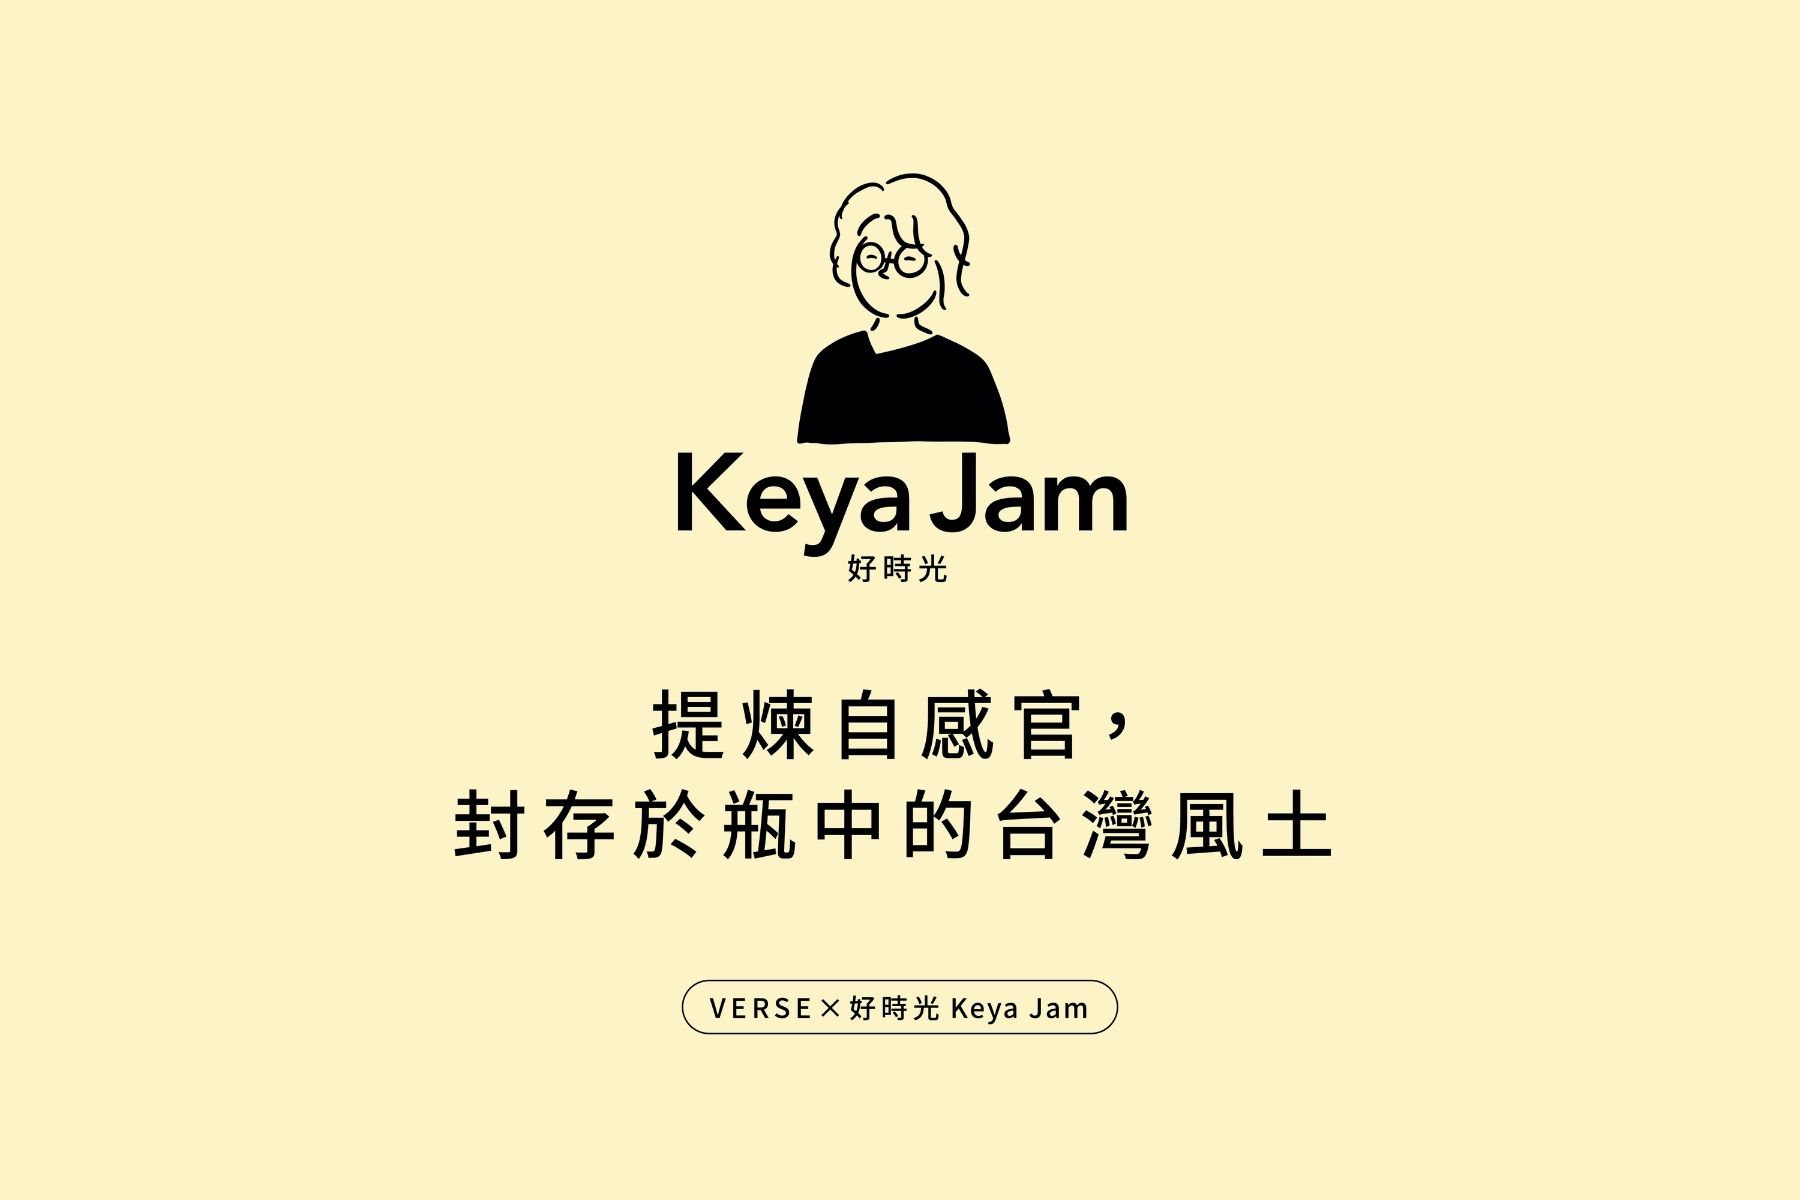 好食光 Keya Jam：提煉自感官，封存於瓶中的台灣風土